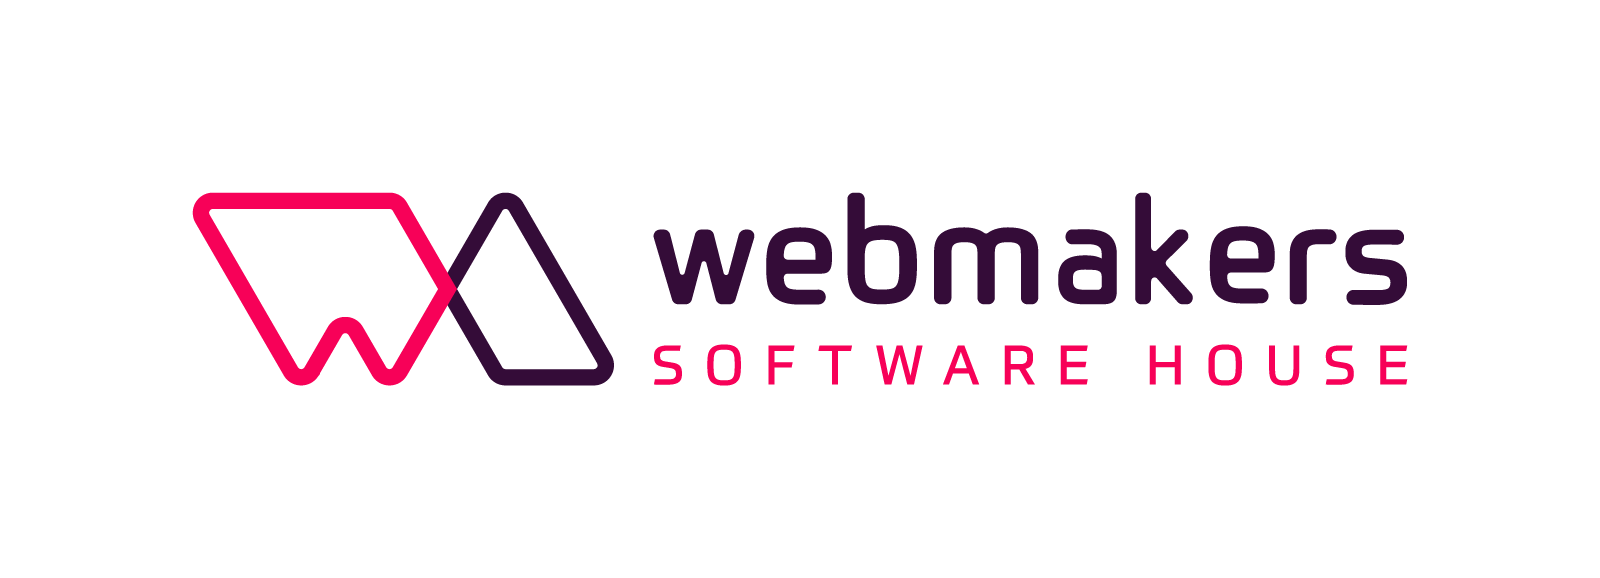 WebMakers to firma programistyczna, która tworzy aplikacje mobilne i internetowe dla klientów w ponad 20 krajach.